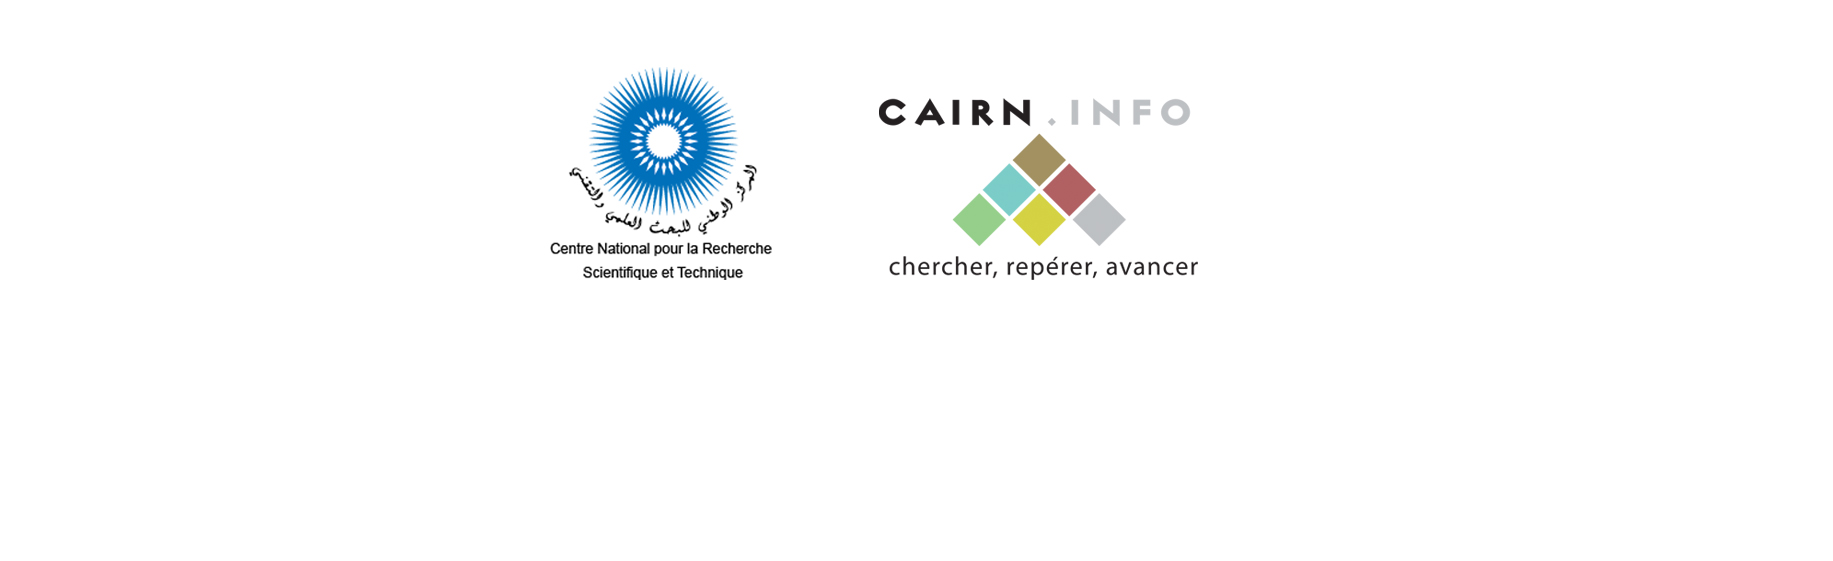 Le CNRST et la Société Cairn signent un accord pour soutenir la recherche scientifique en Sciences Humaines et Sociales.